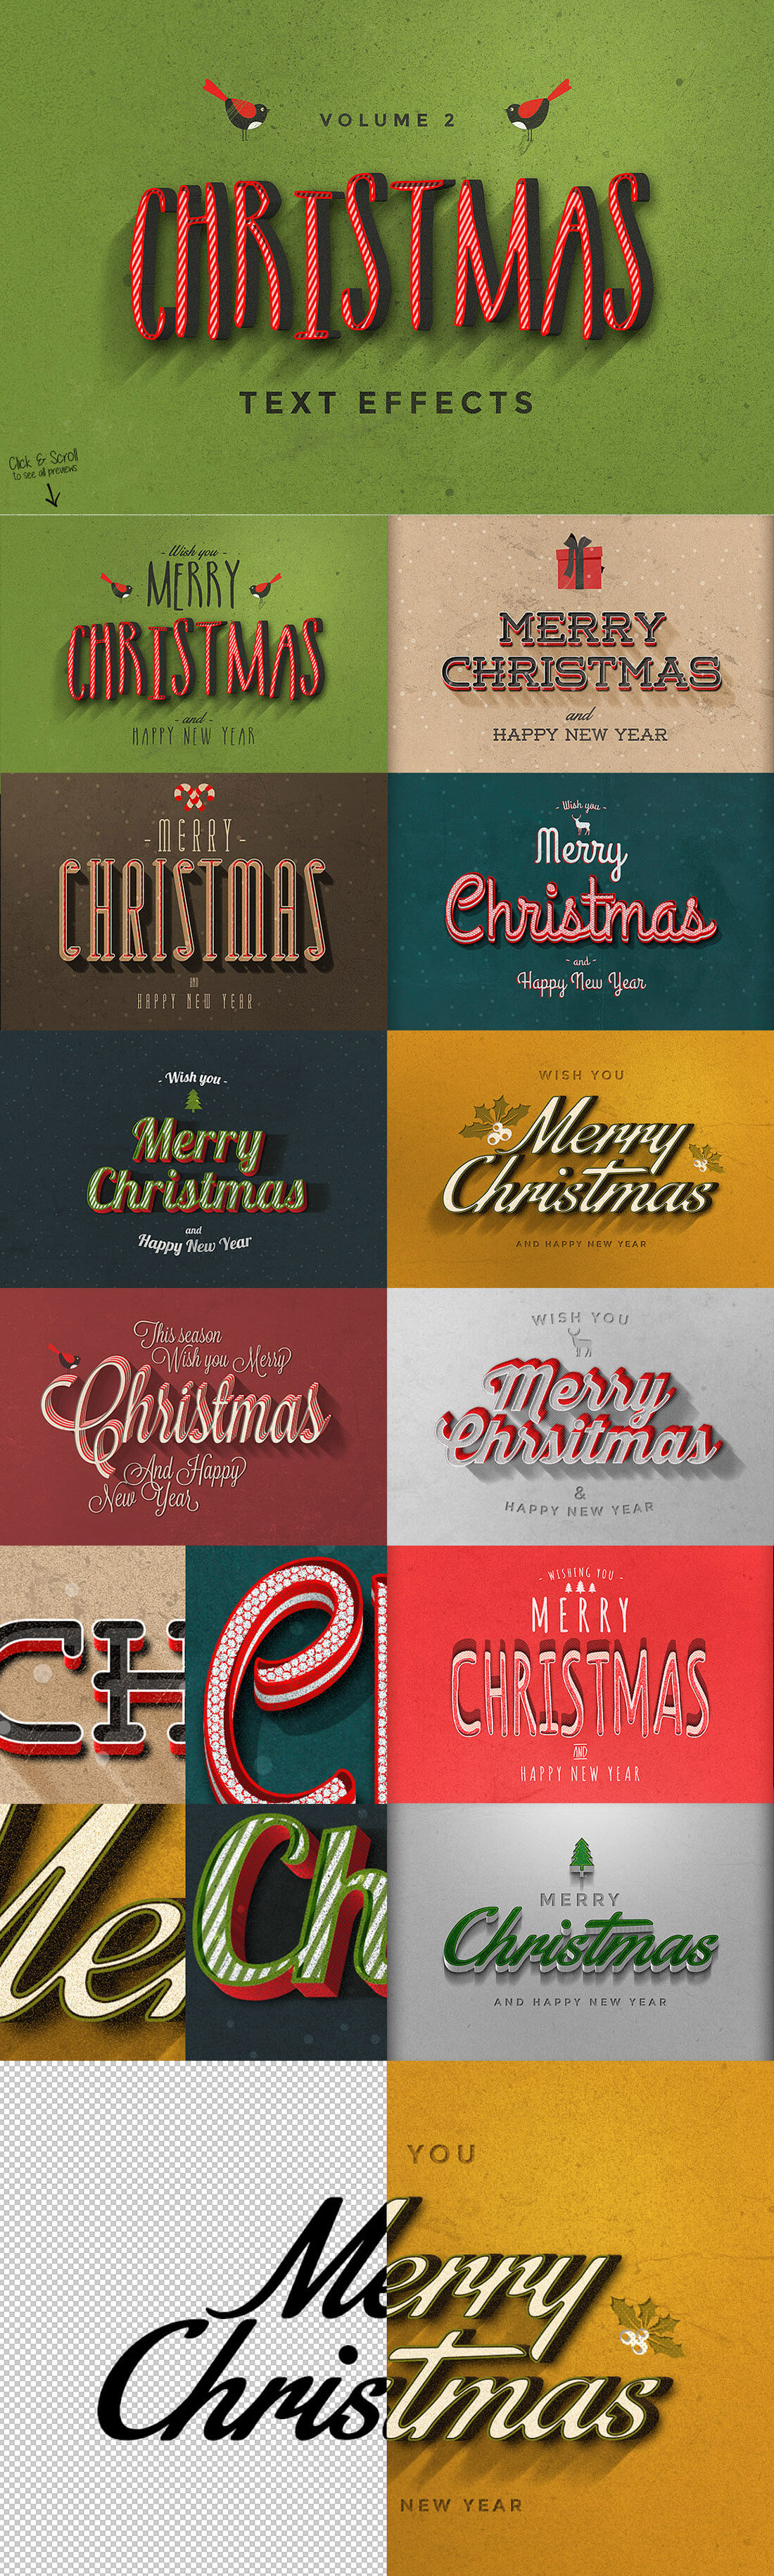 圣诞特典：400+圣诞主题设计素材包 Christmas Bundle 2016（2.35GB, AI, EPS, PSD 格式）插图(3)